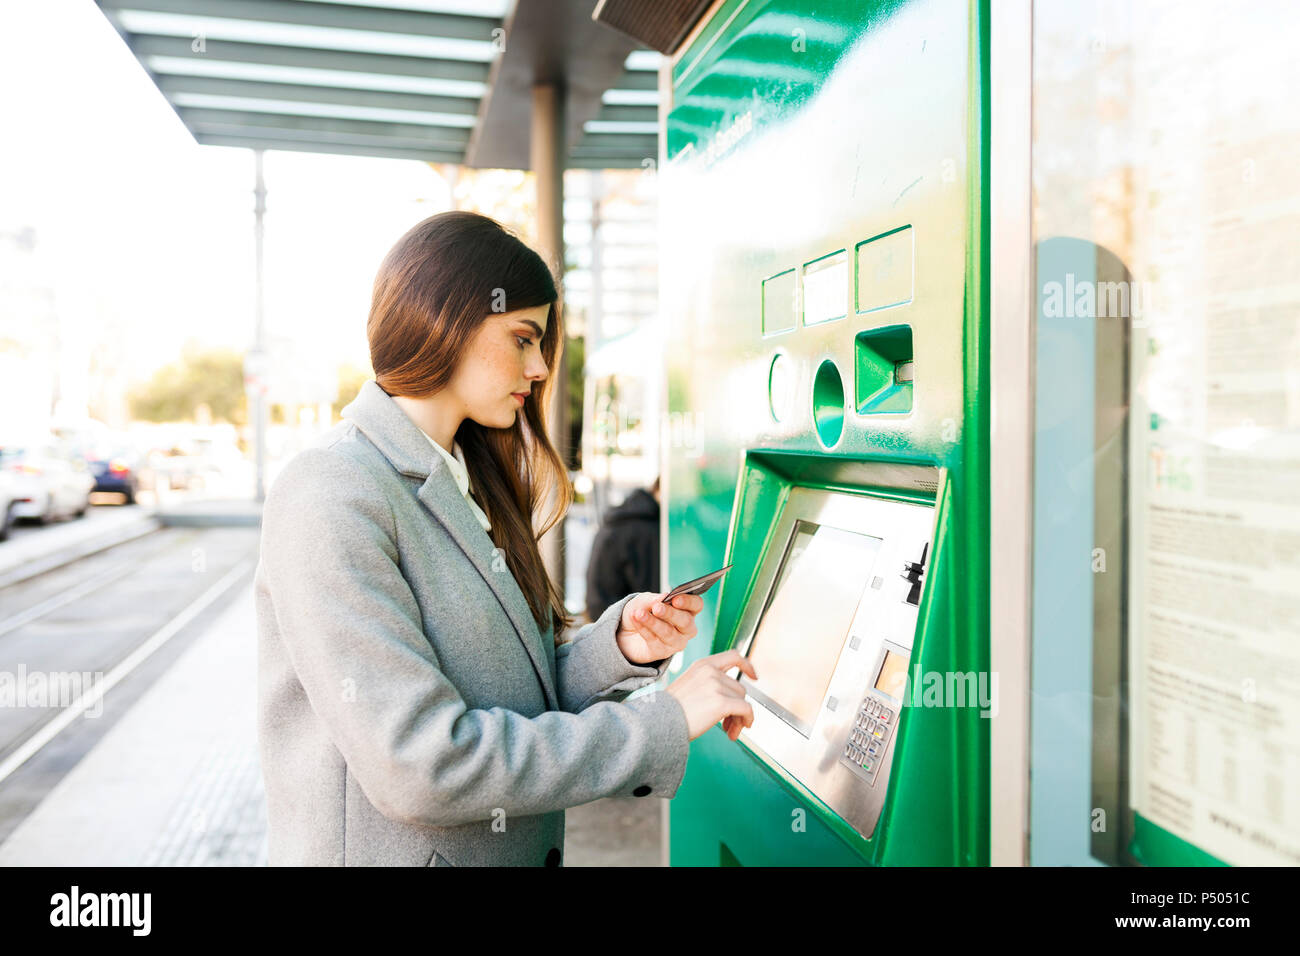 Espagne, Barcelone, femme l'achat de billets à la station automatique de la machine Banque D'Images